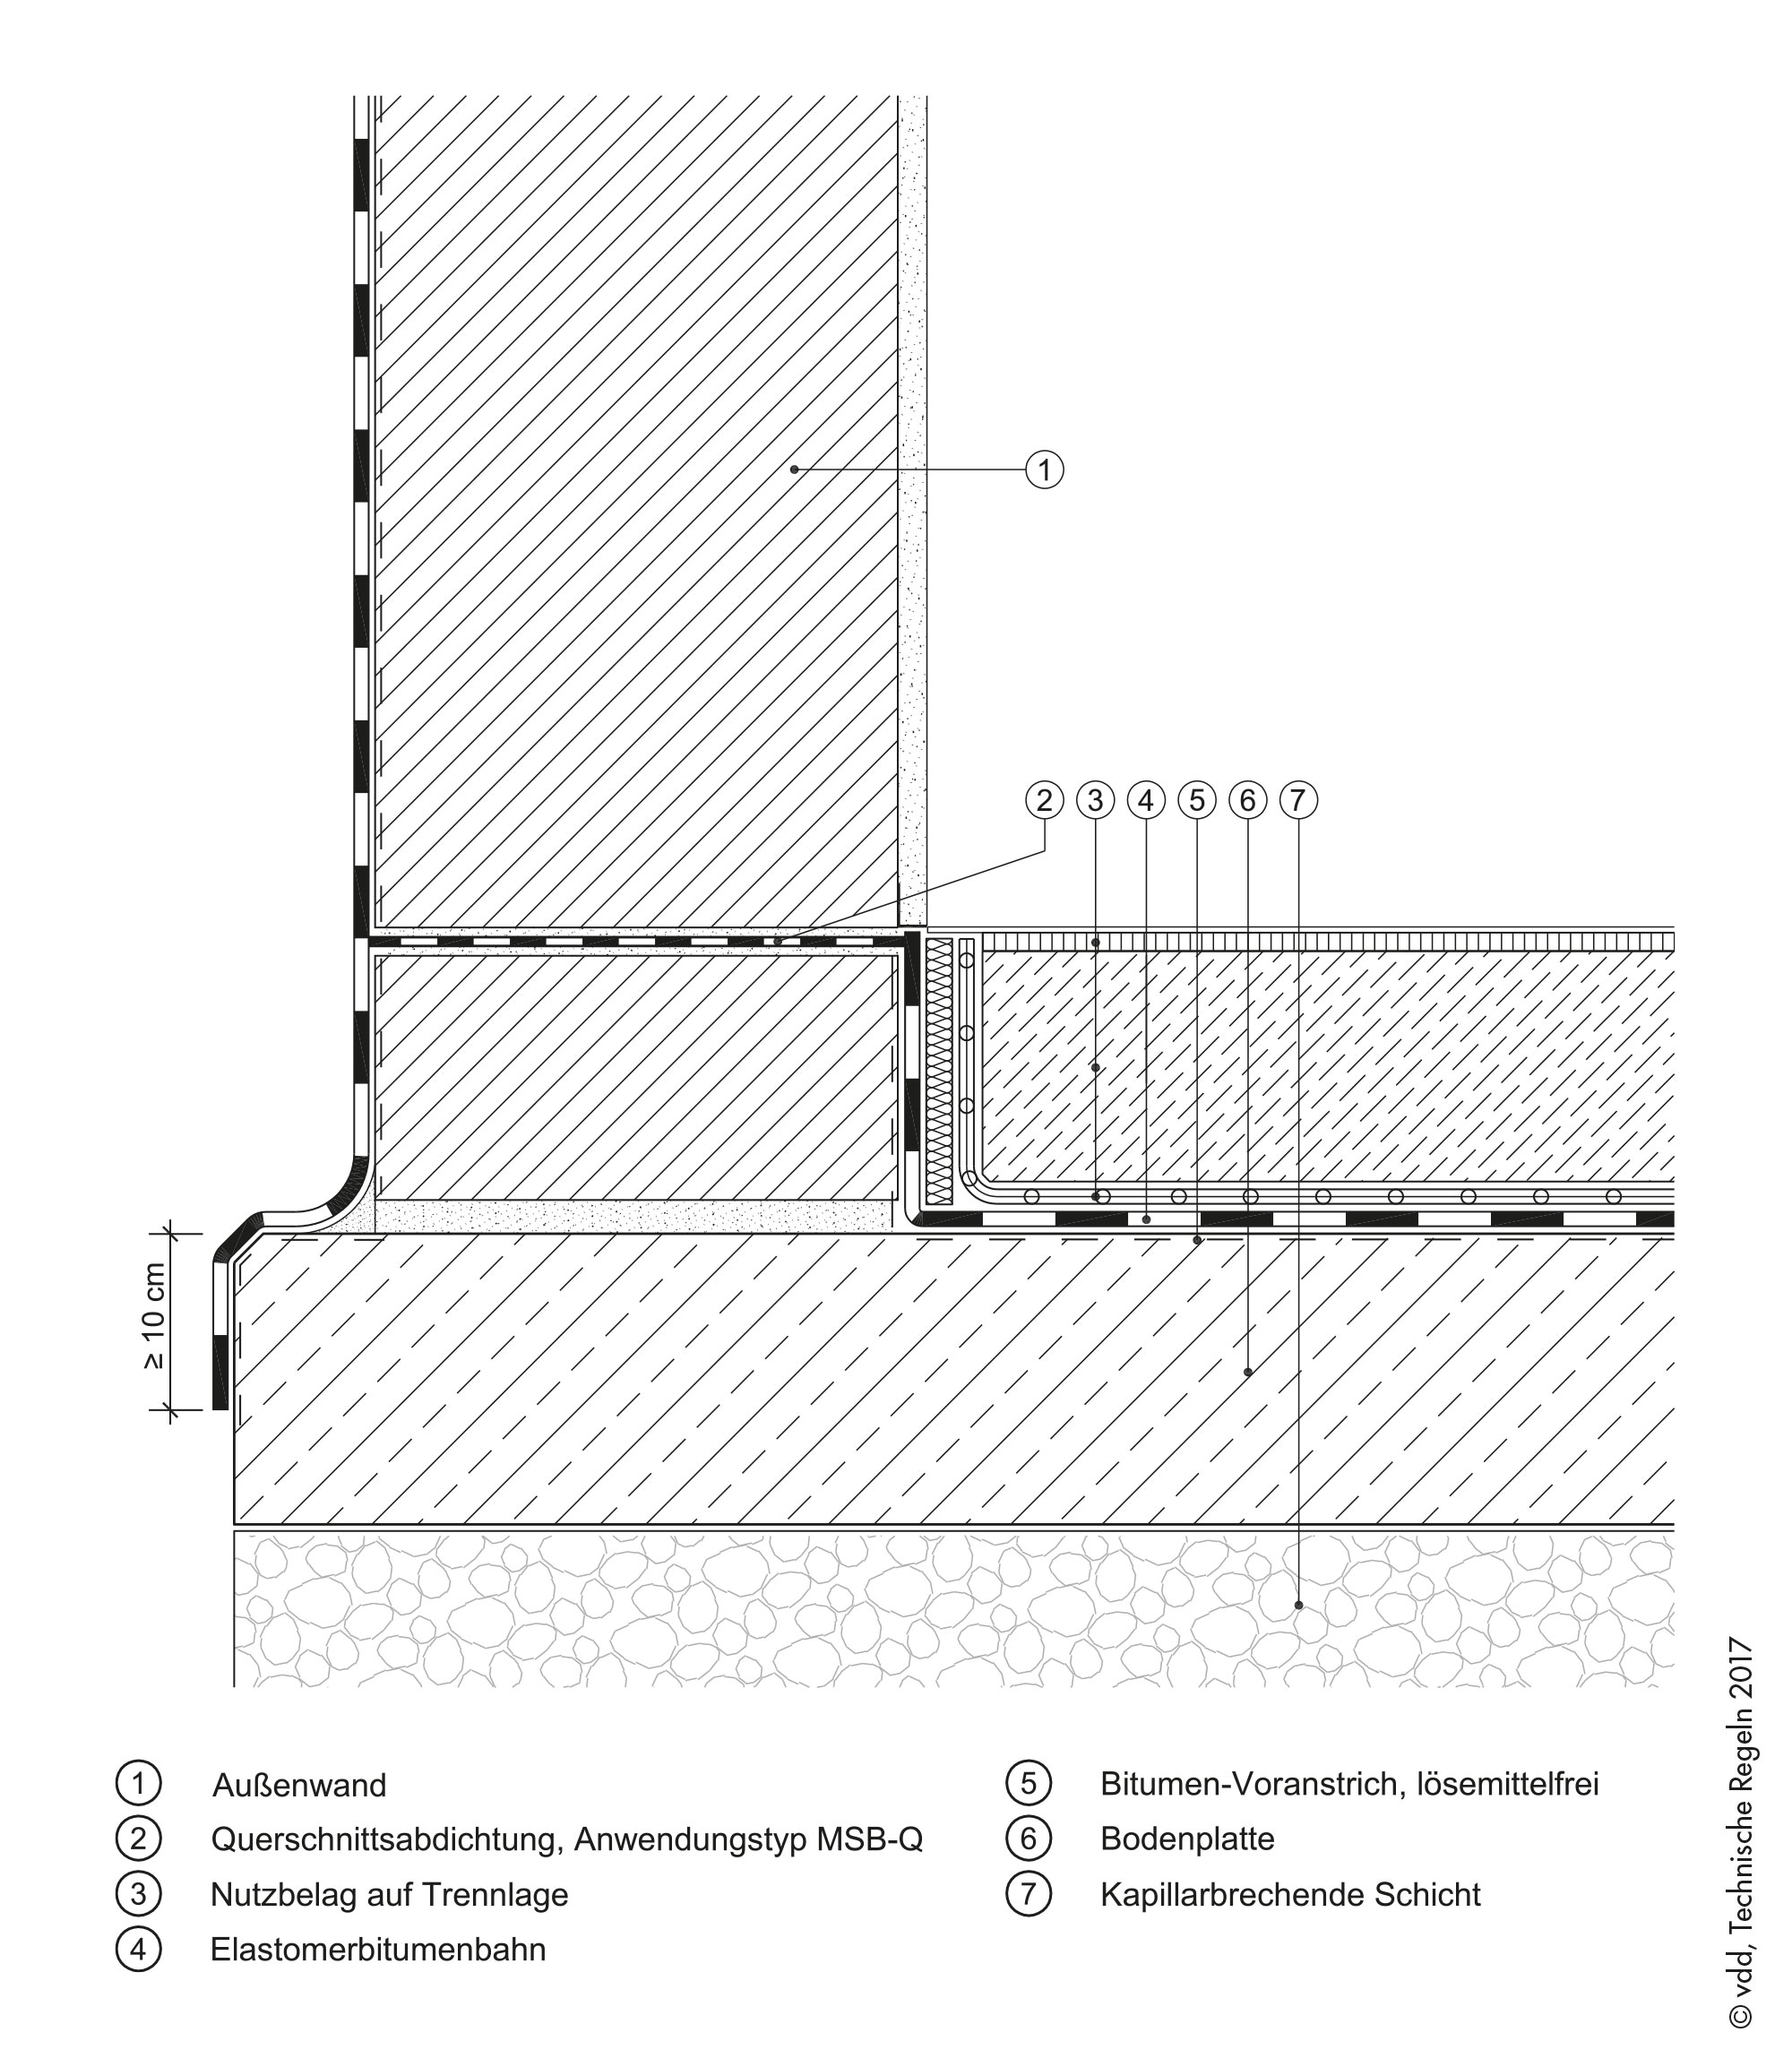 Abdichtung von erdberührten Bauteilen nach DIN 18533, Wassereinwirkung: W1.1-E Bodenfeuchte und nicht drückendes Wasser und W4-E Kapillarwasser in und unter Wänden